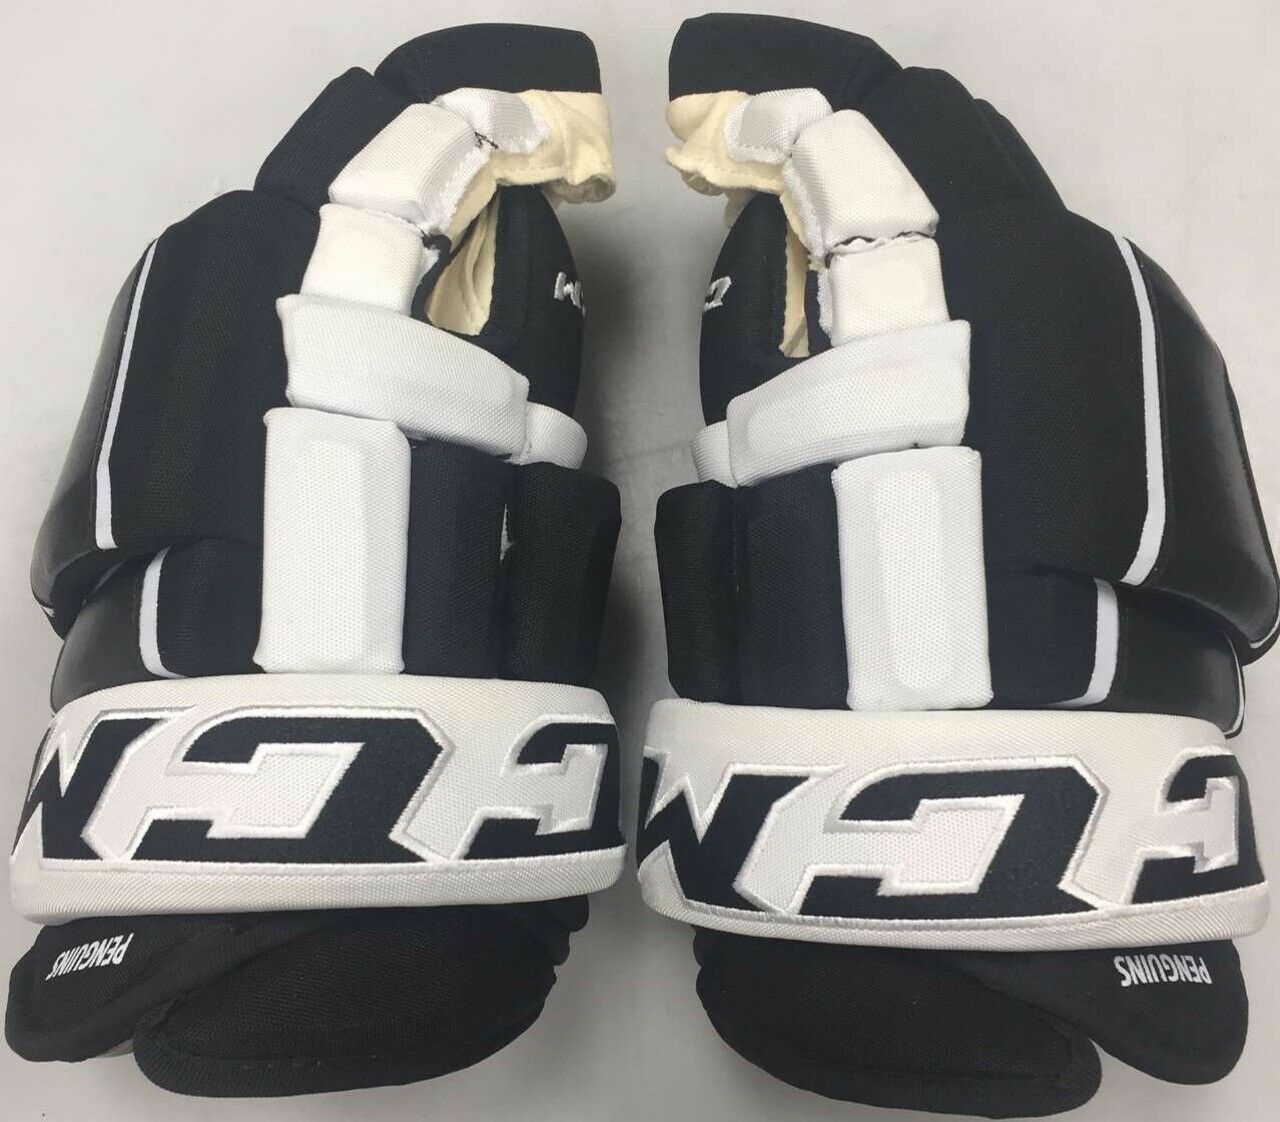 Pro Stock Ccm Hg97pp Hockey Gloves 14" Pittsburgh Penguins Black White 4roll Pit